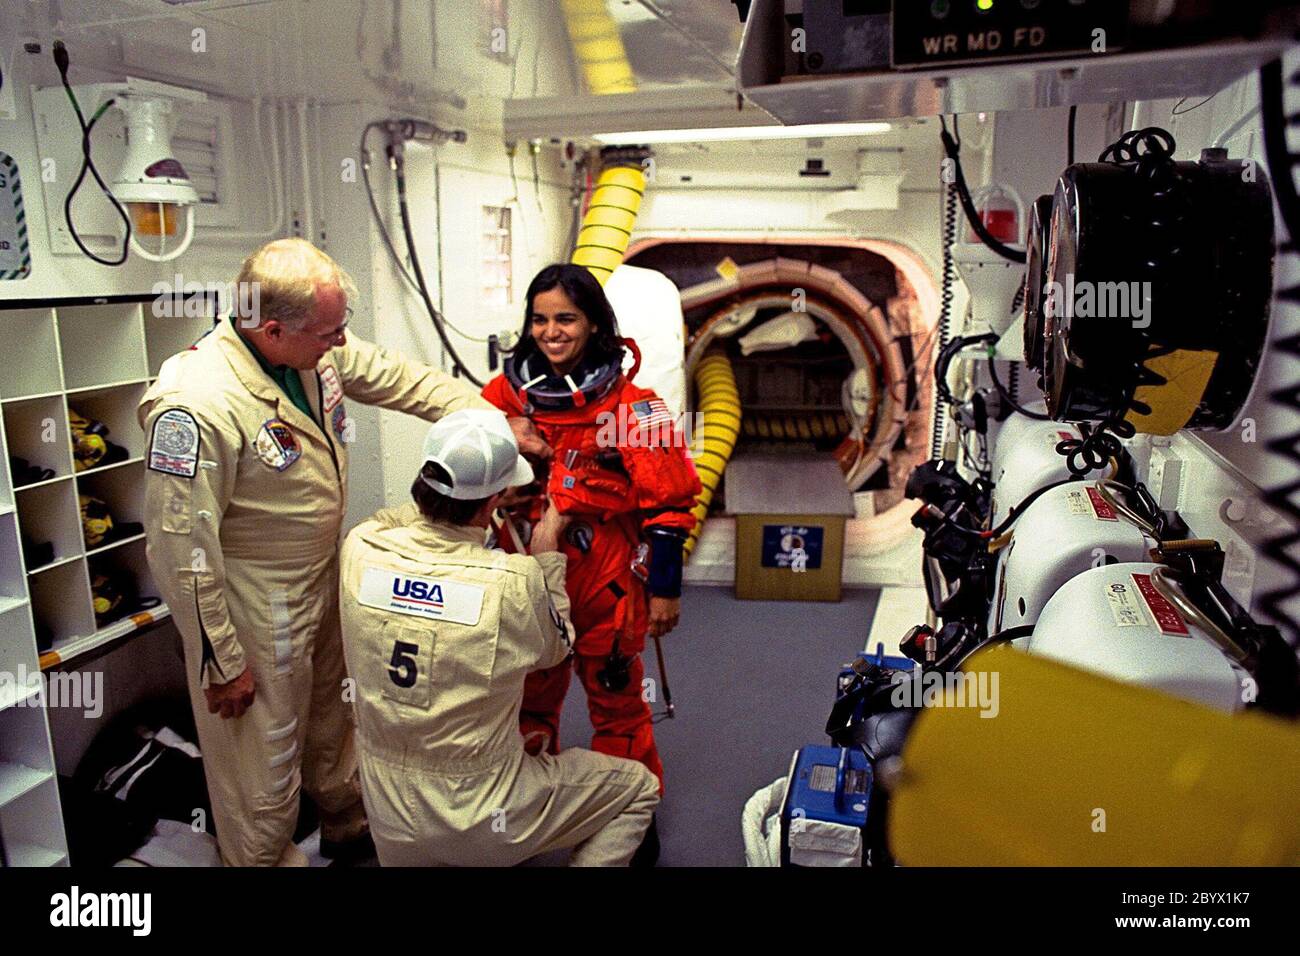 kalpana chawla space shuttle crash